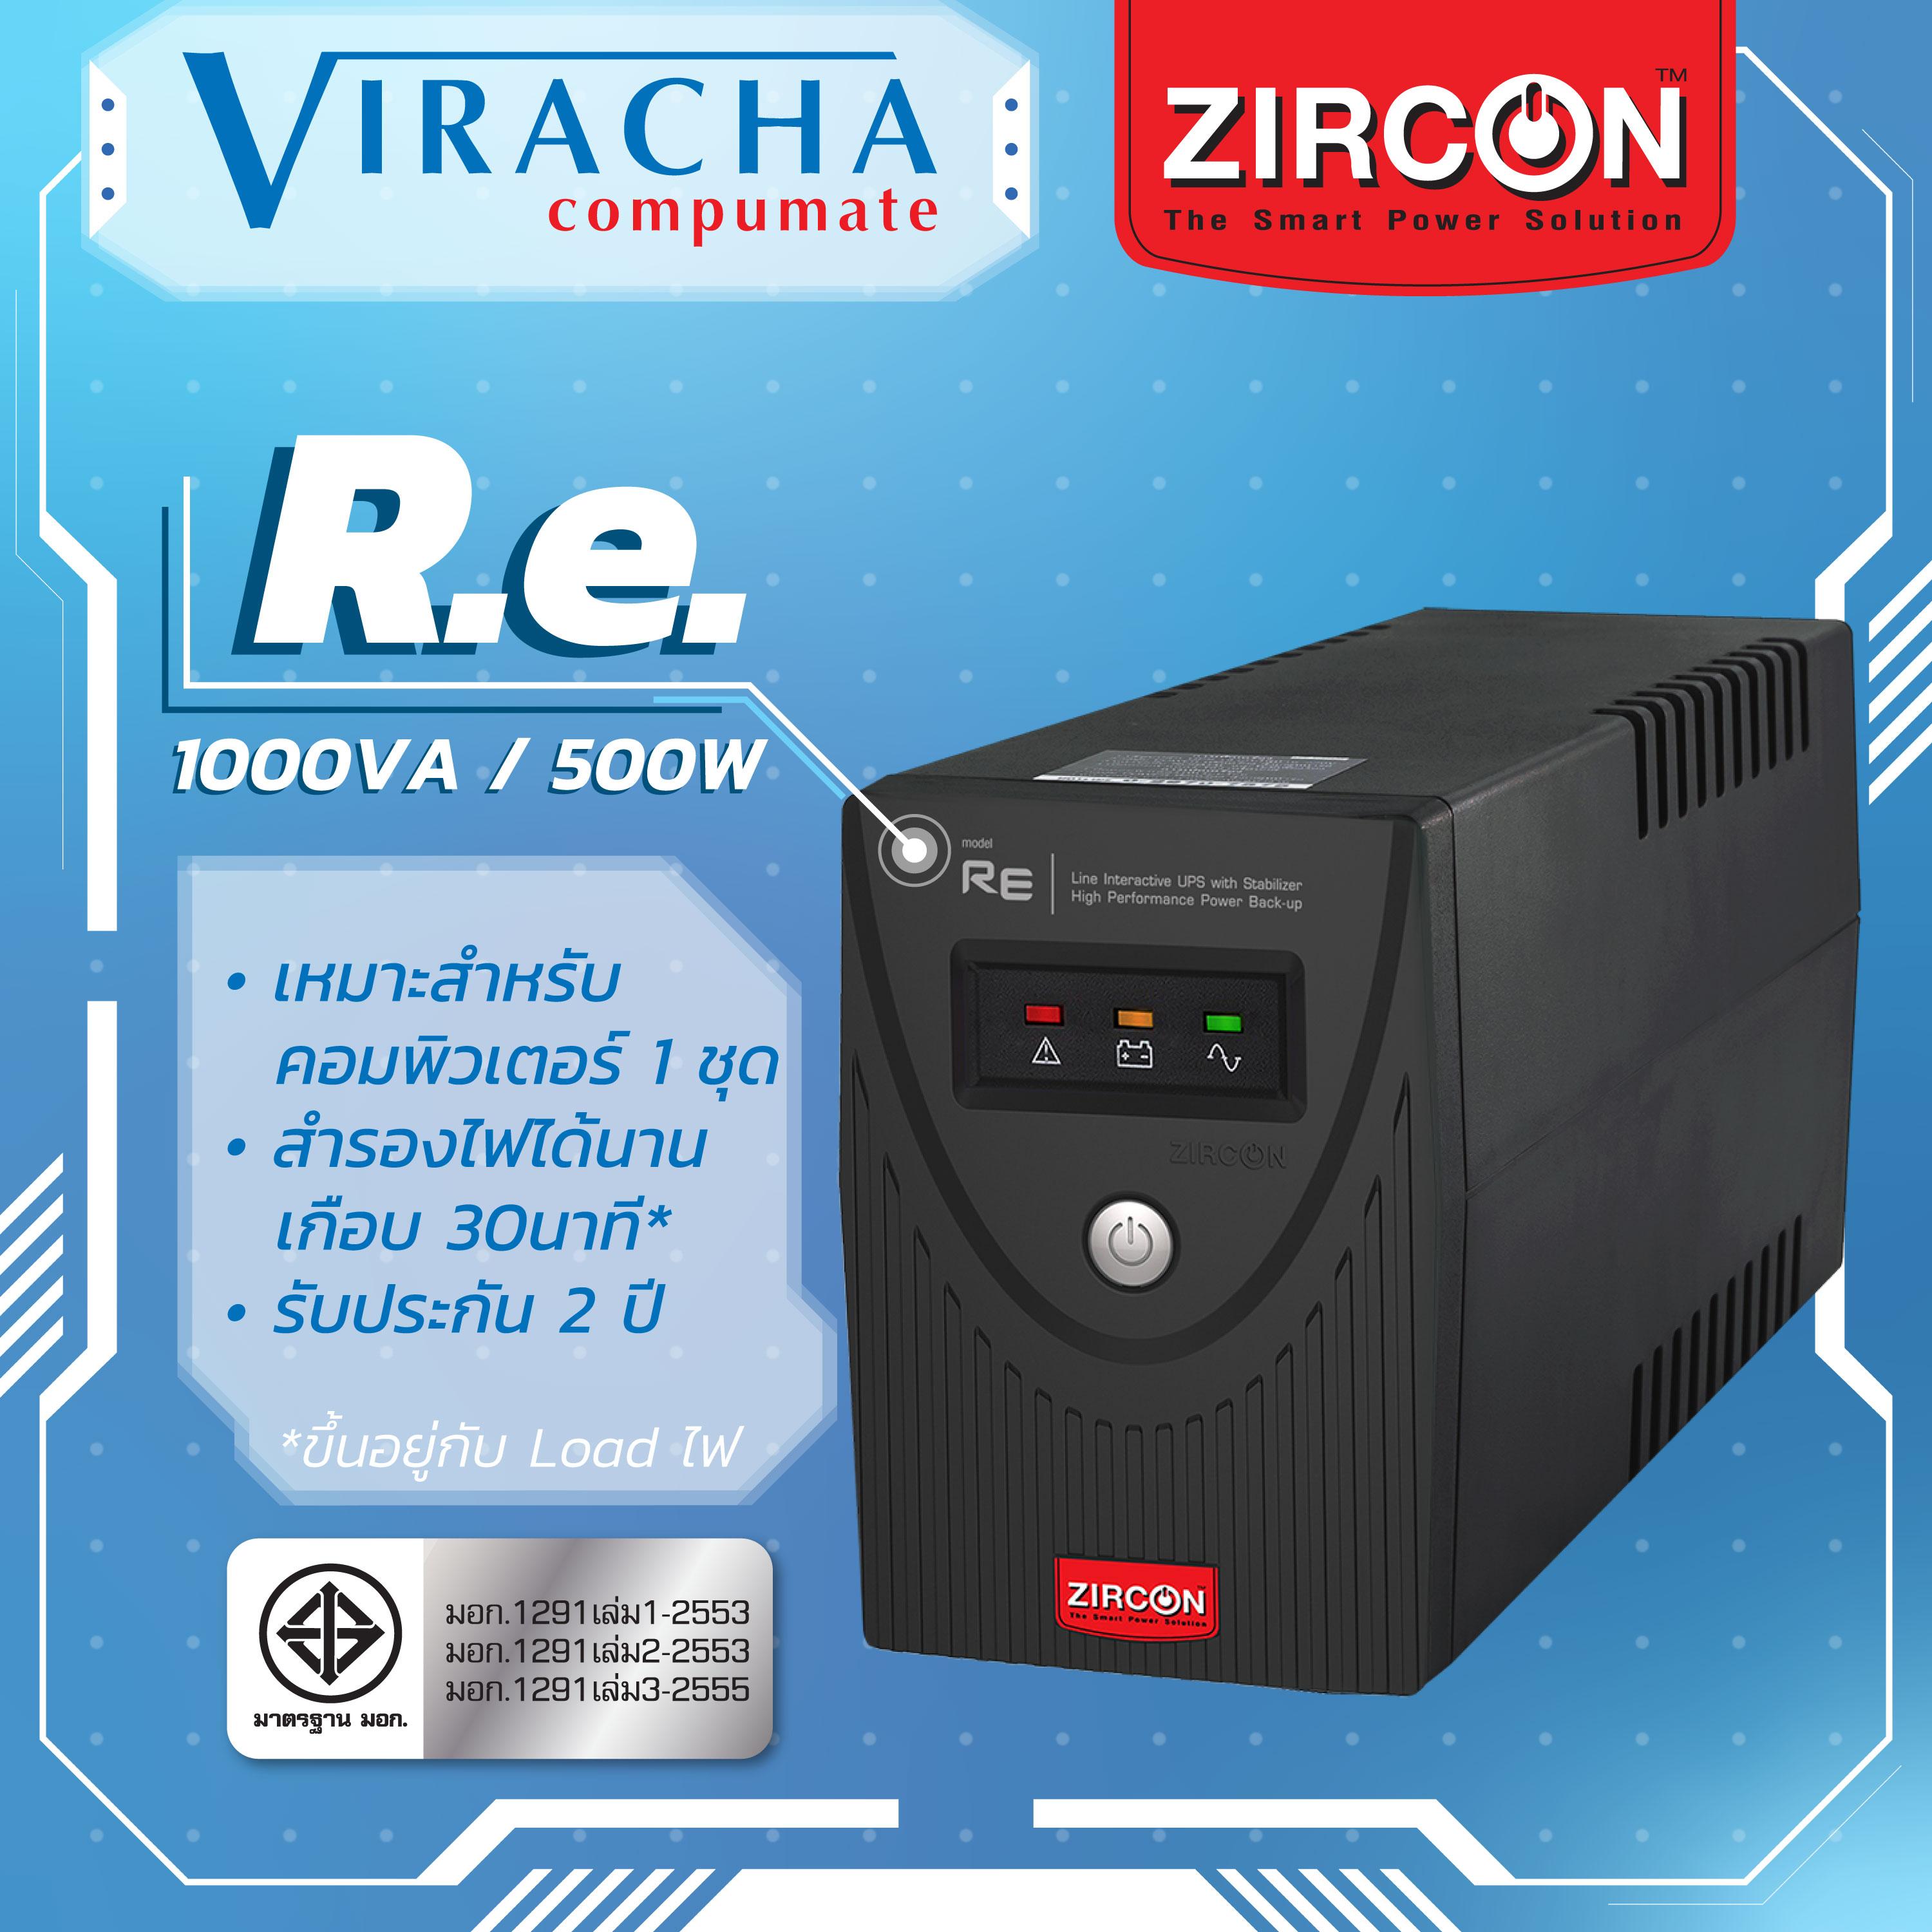 เครื่องสำรองไฟ ZIRCON รุ่น RE1000VA/500W  มือหนึ่ง100% ฟังก์ชั่น LED แสดงสถานะไฟ ช่องเสียบ 4 Outlet ใช้งานกับคอมพิวเตอร์และทีวี จอ 15-23นิ้ว ประกัน2 ปี แล